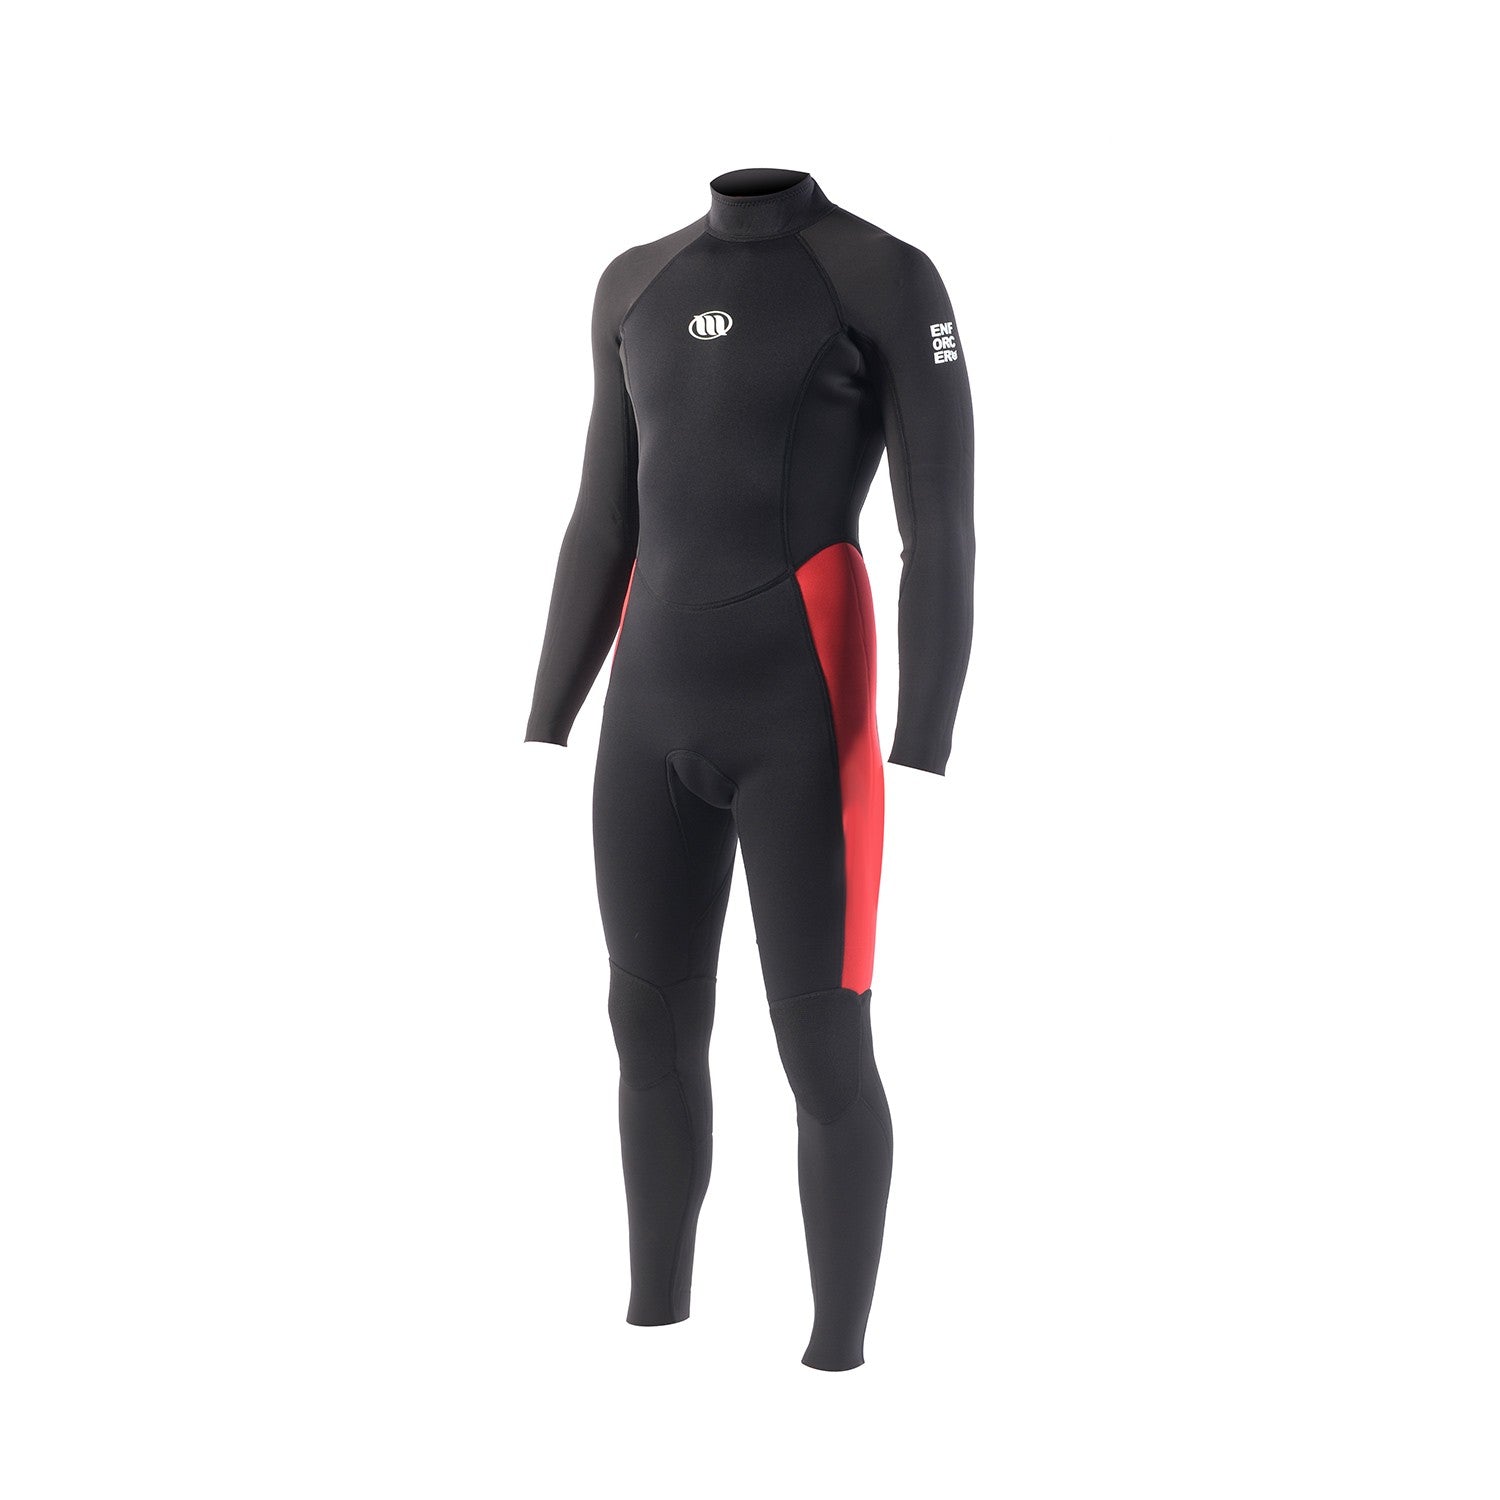 WEST - Surf wetsuit - Enforcer-S Back zip 3/2mm - Black / Red